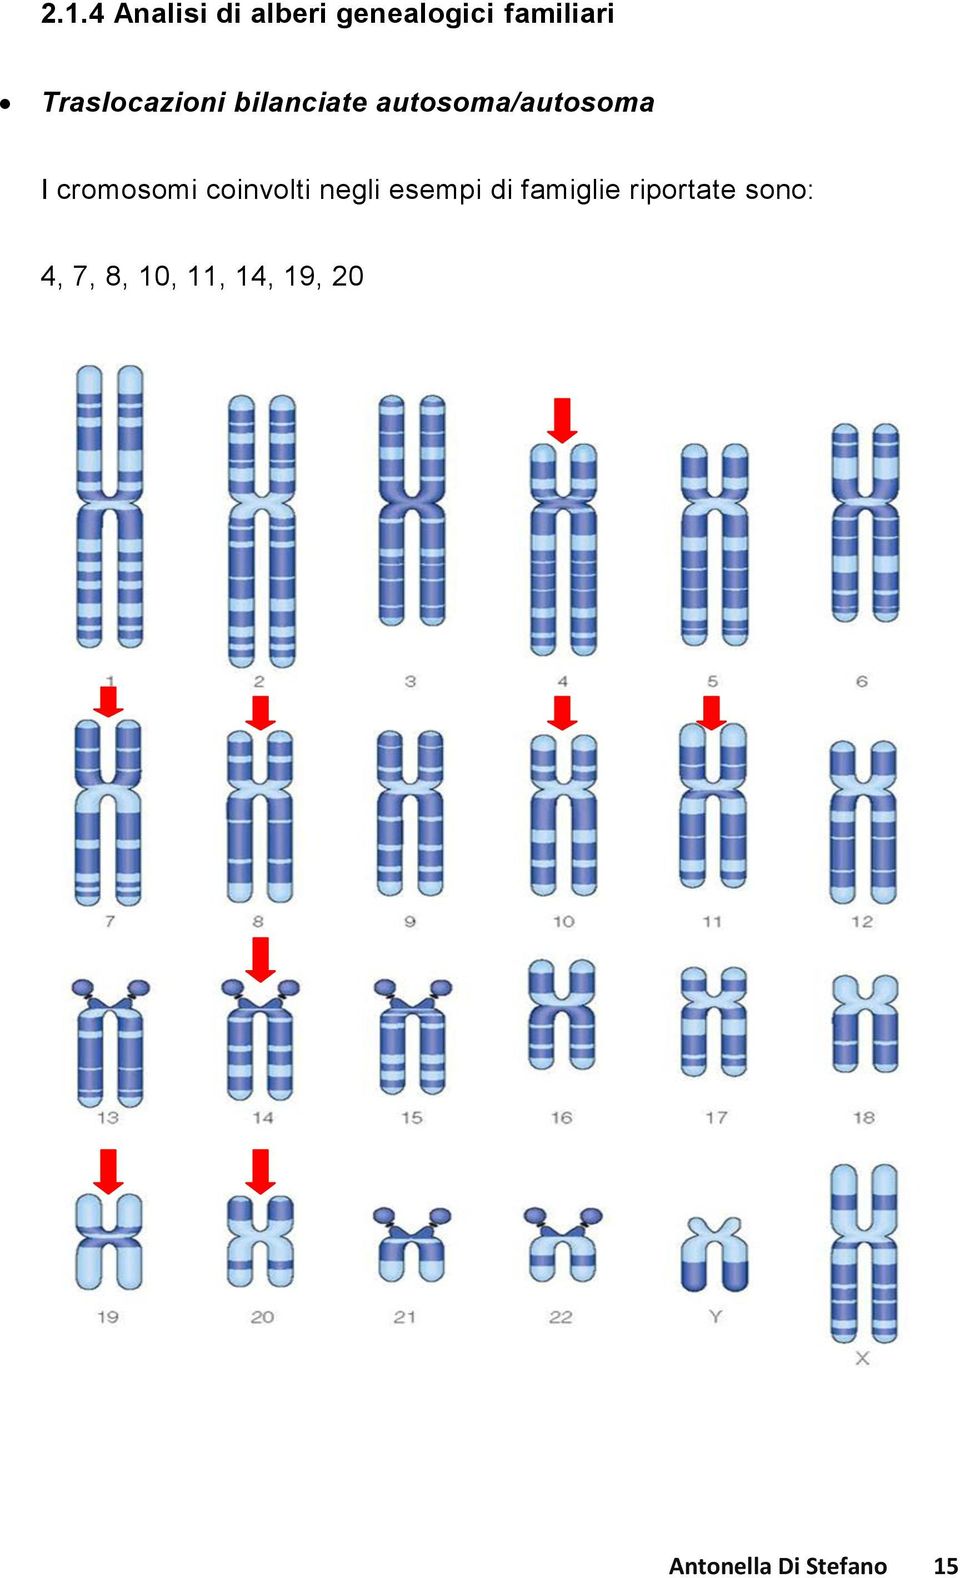 cromosomi coinvolti negli esempi di famiglie